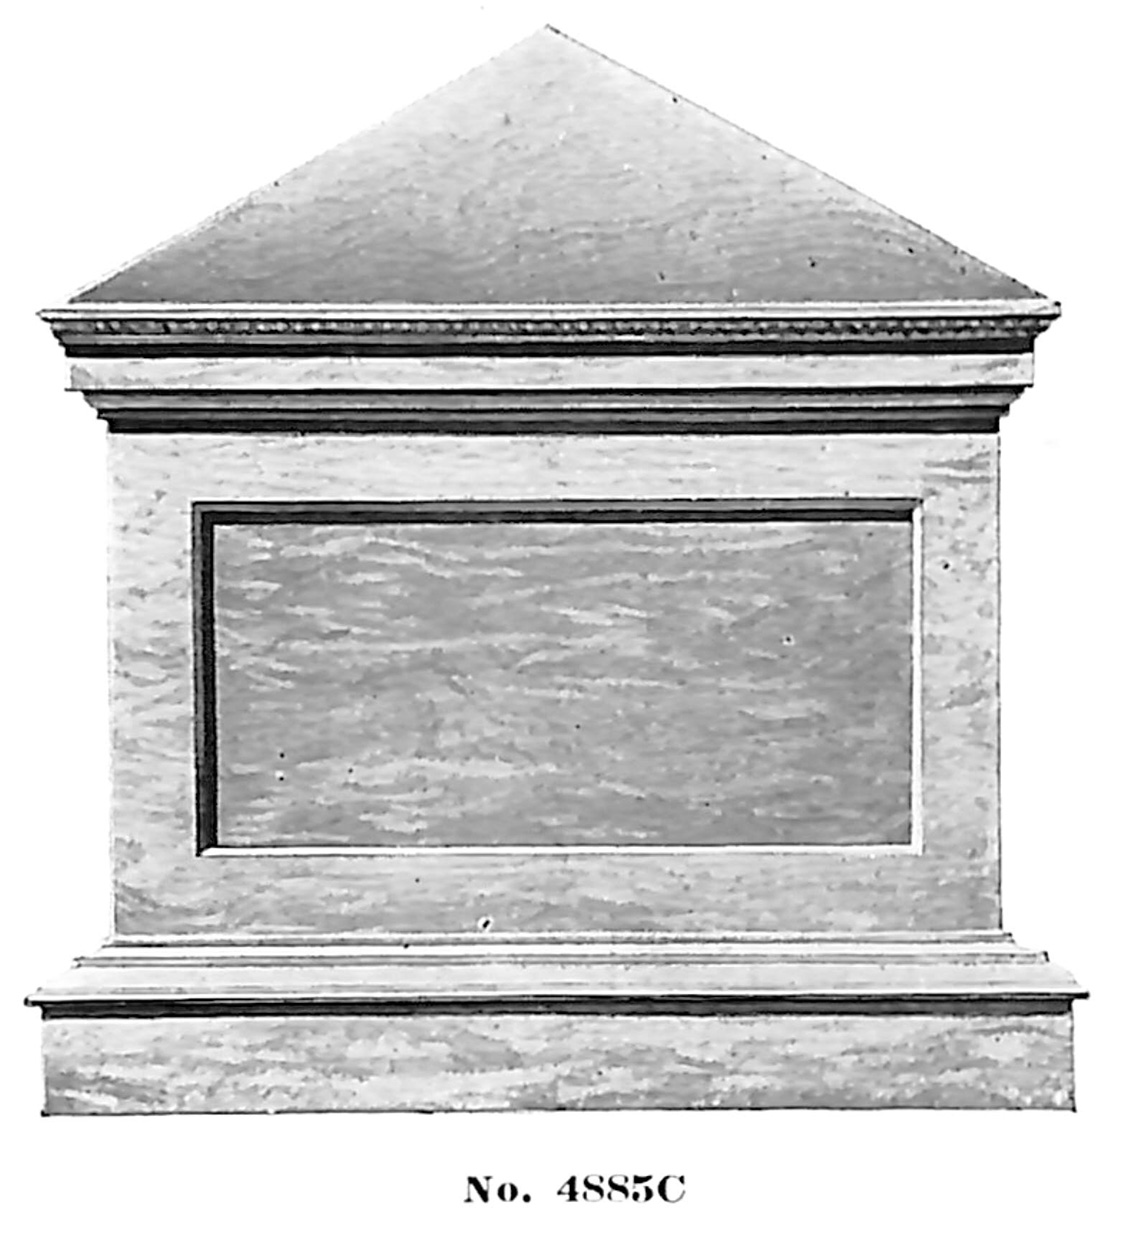 Altar no. 4885C